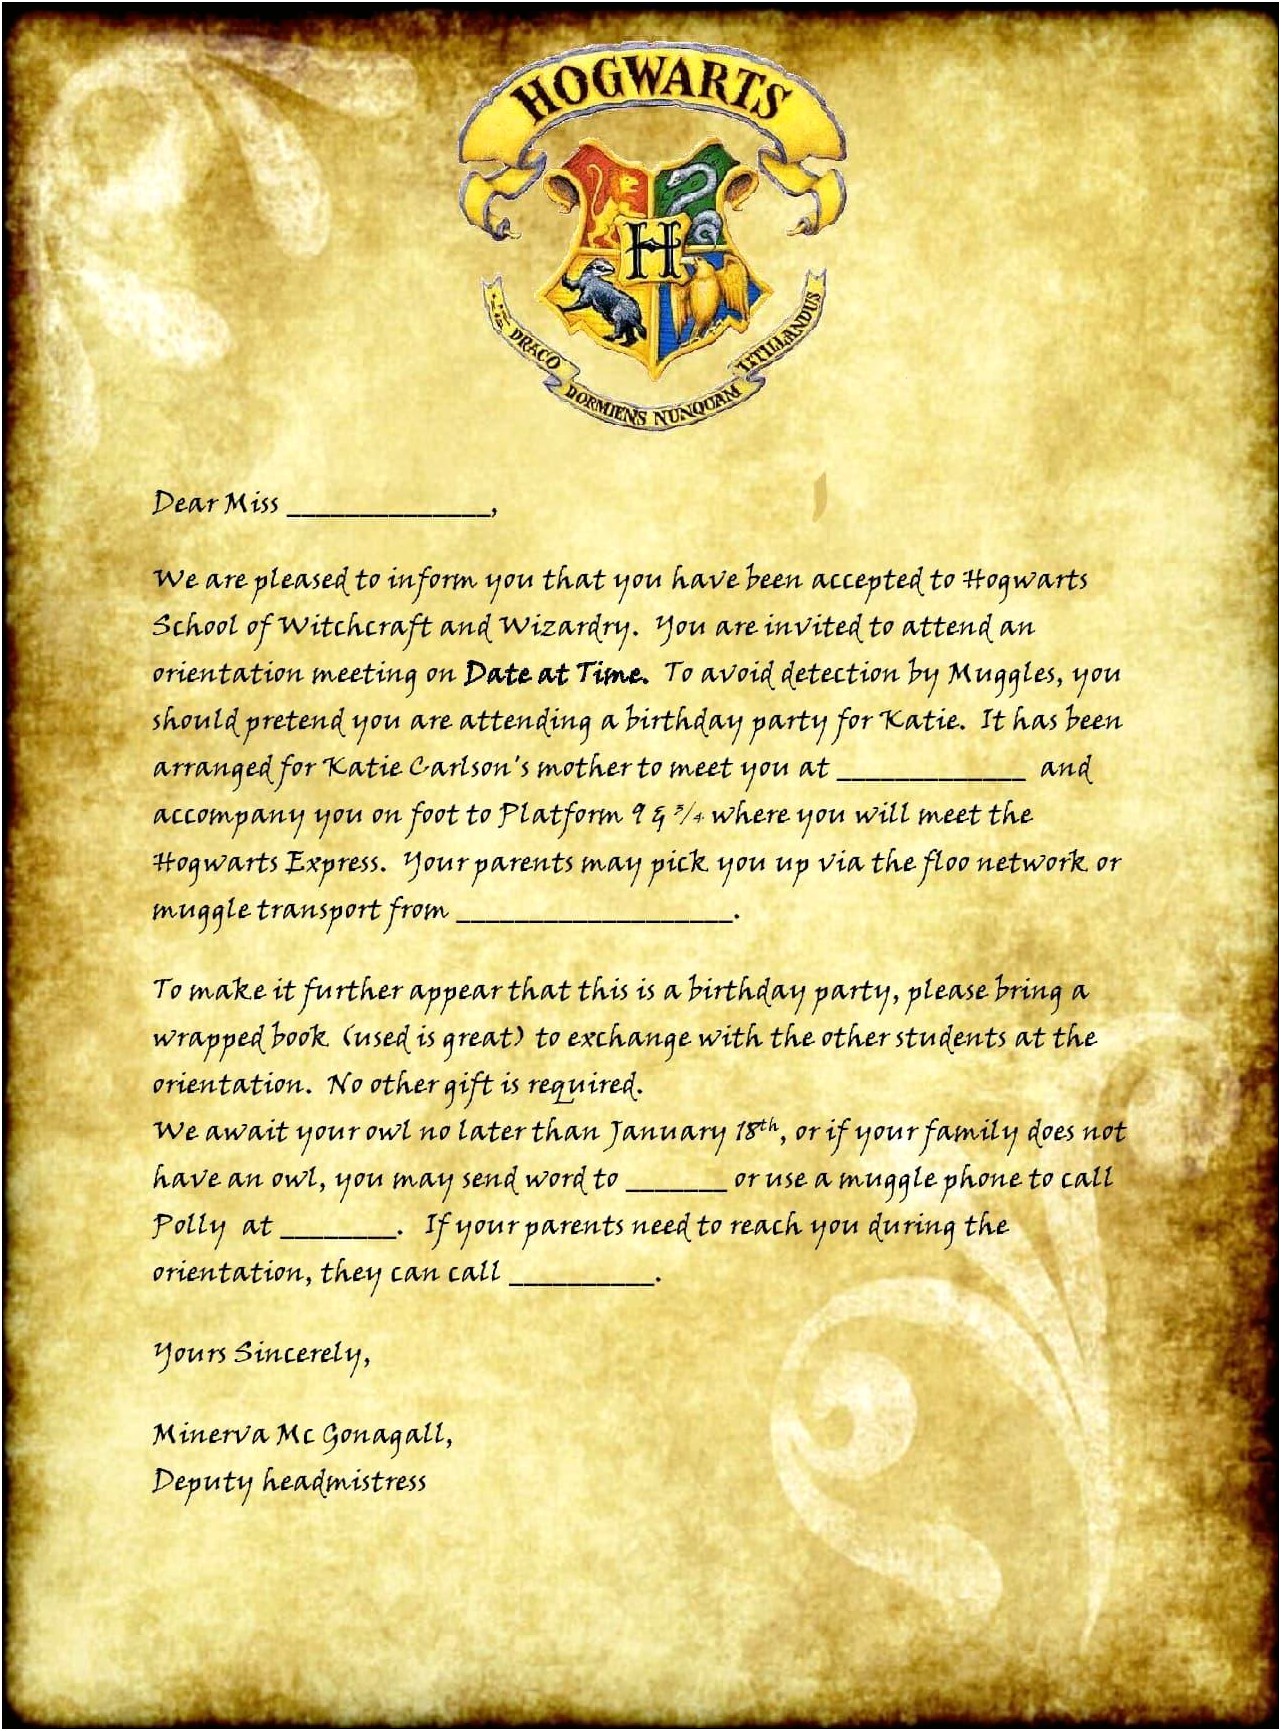 Hogwarts Acceptance Letter Envelope Template Printable Free